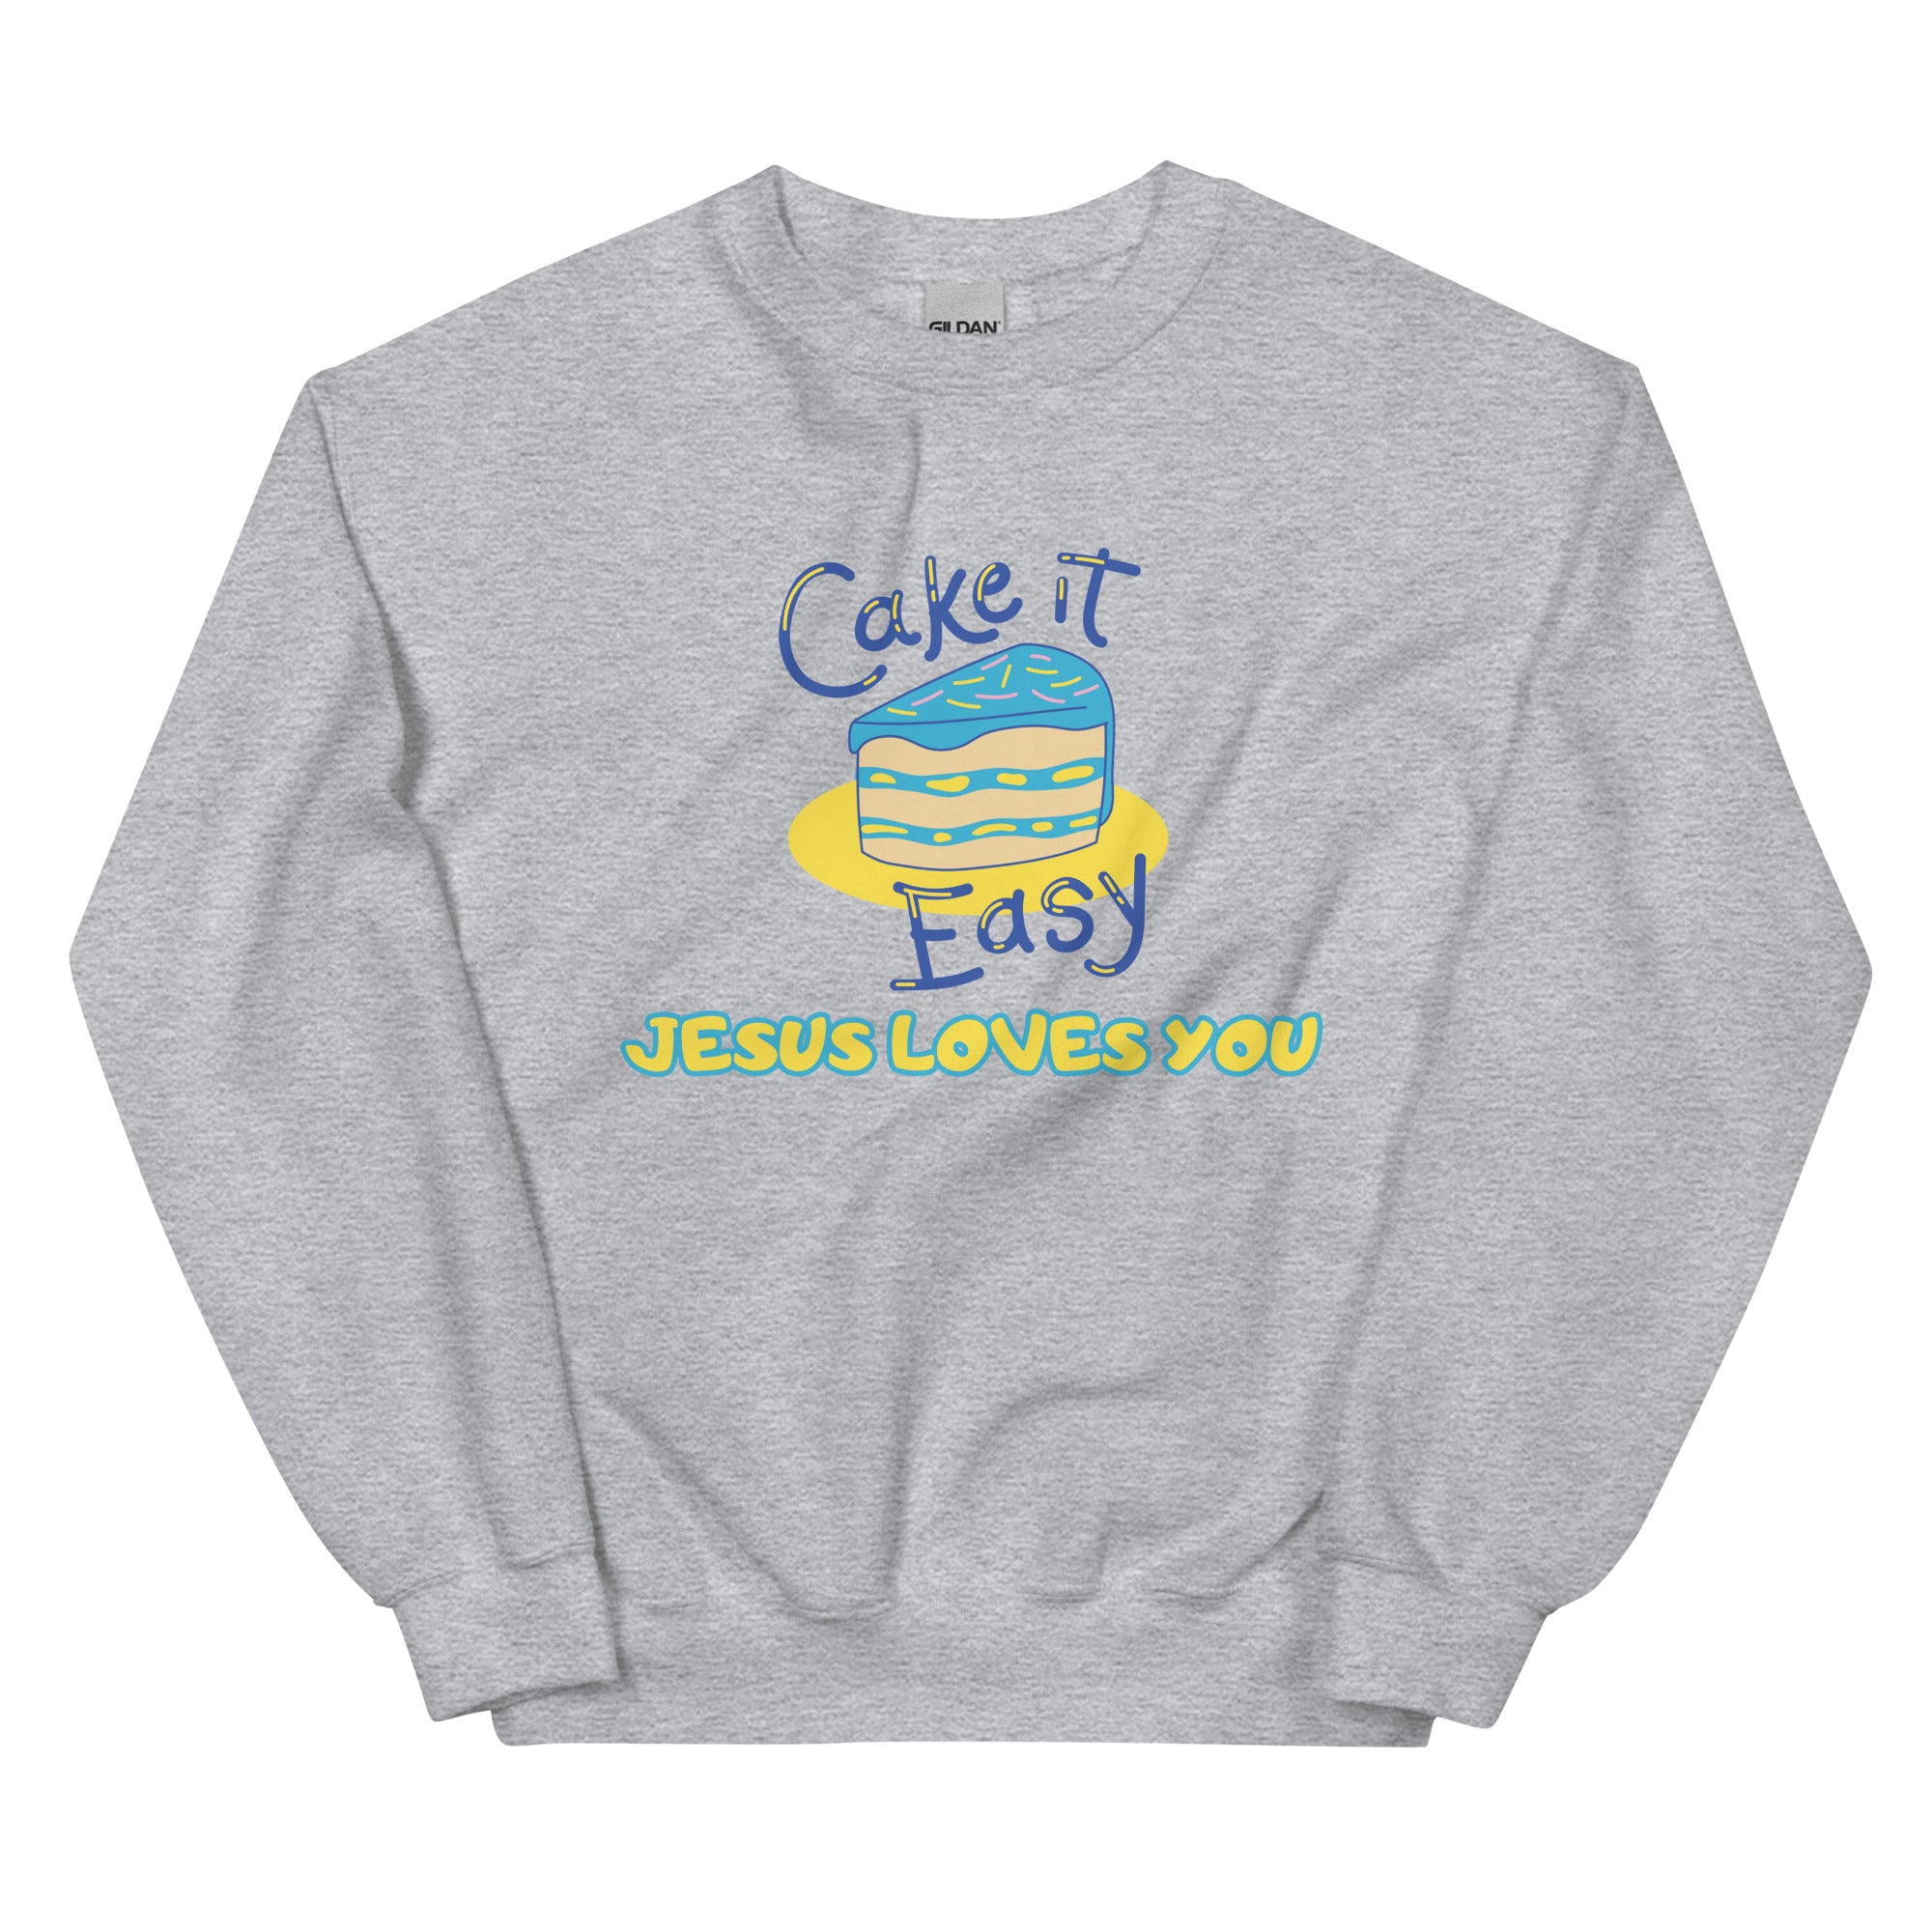 Cake it easy Unisex Sweatshirt